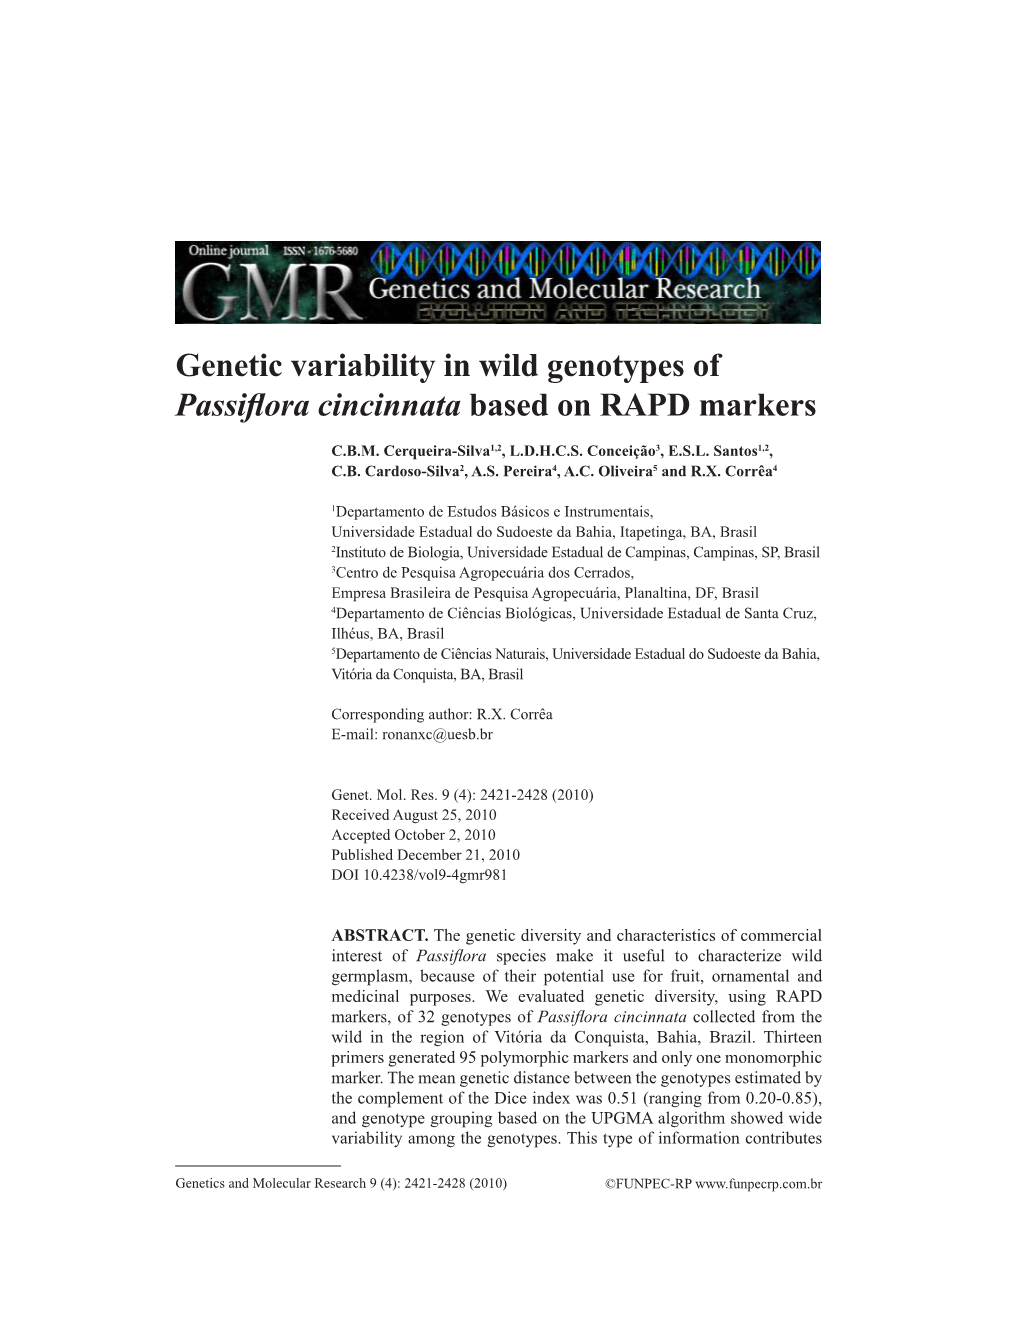 Genetic Variability in Wild Genotypes of Passiflora Cincinnata Based on RAPD Markers